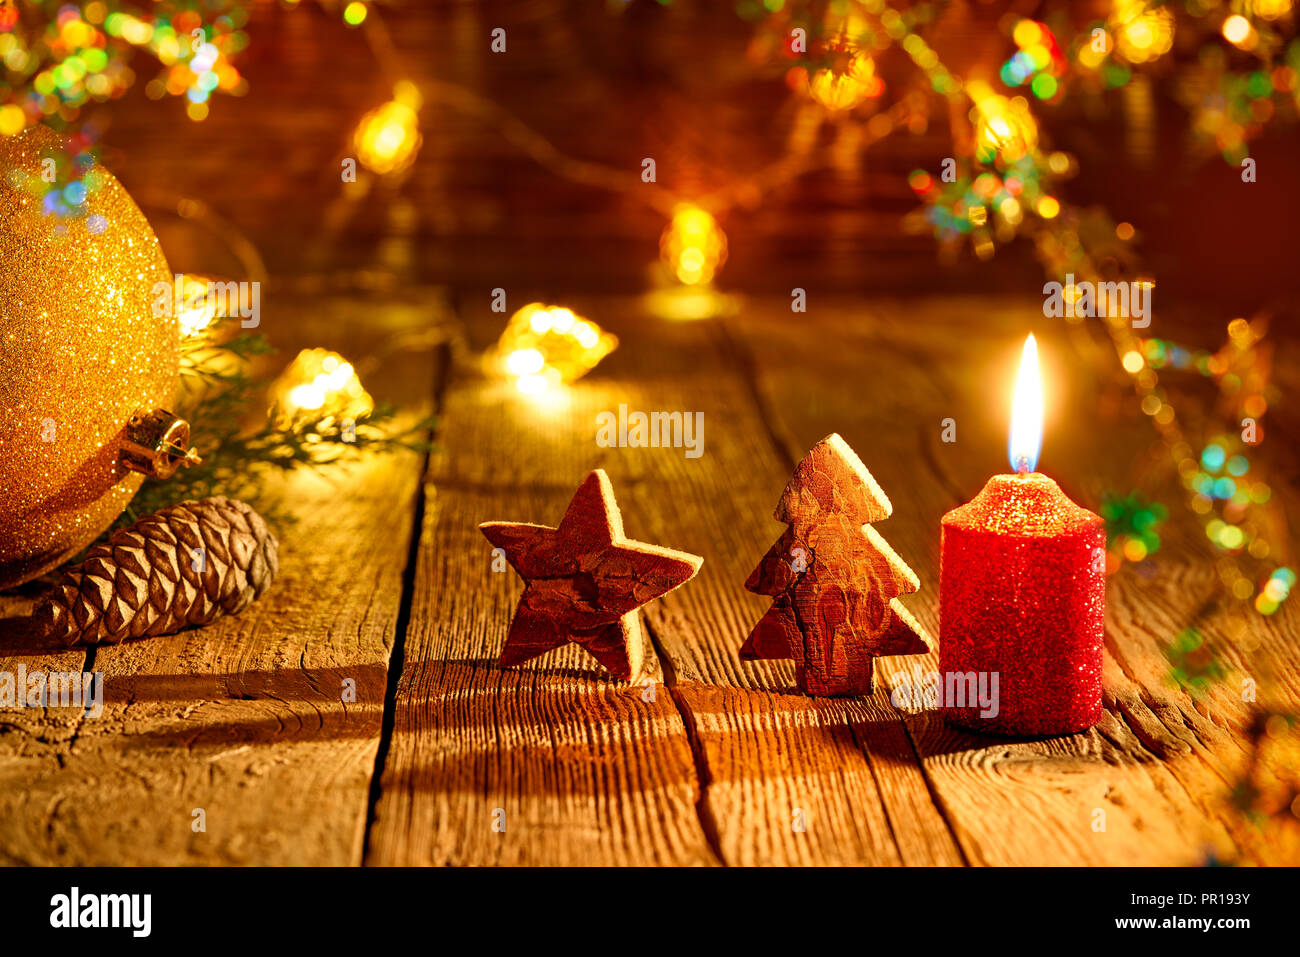 Weihnachtsbaum Stern und Kerze vintage rustikalen Holzmöbeln Hintergrund Dekoration Stockfoto